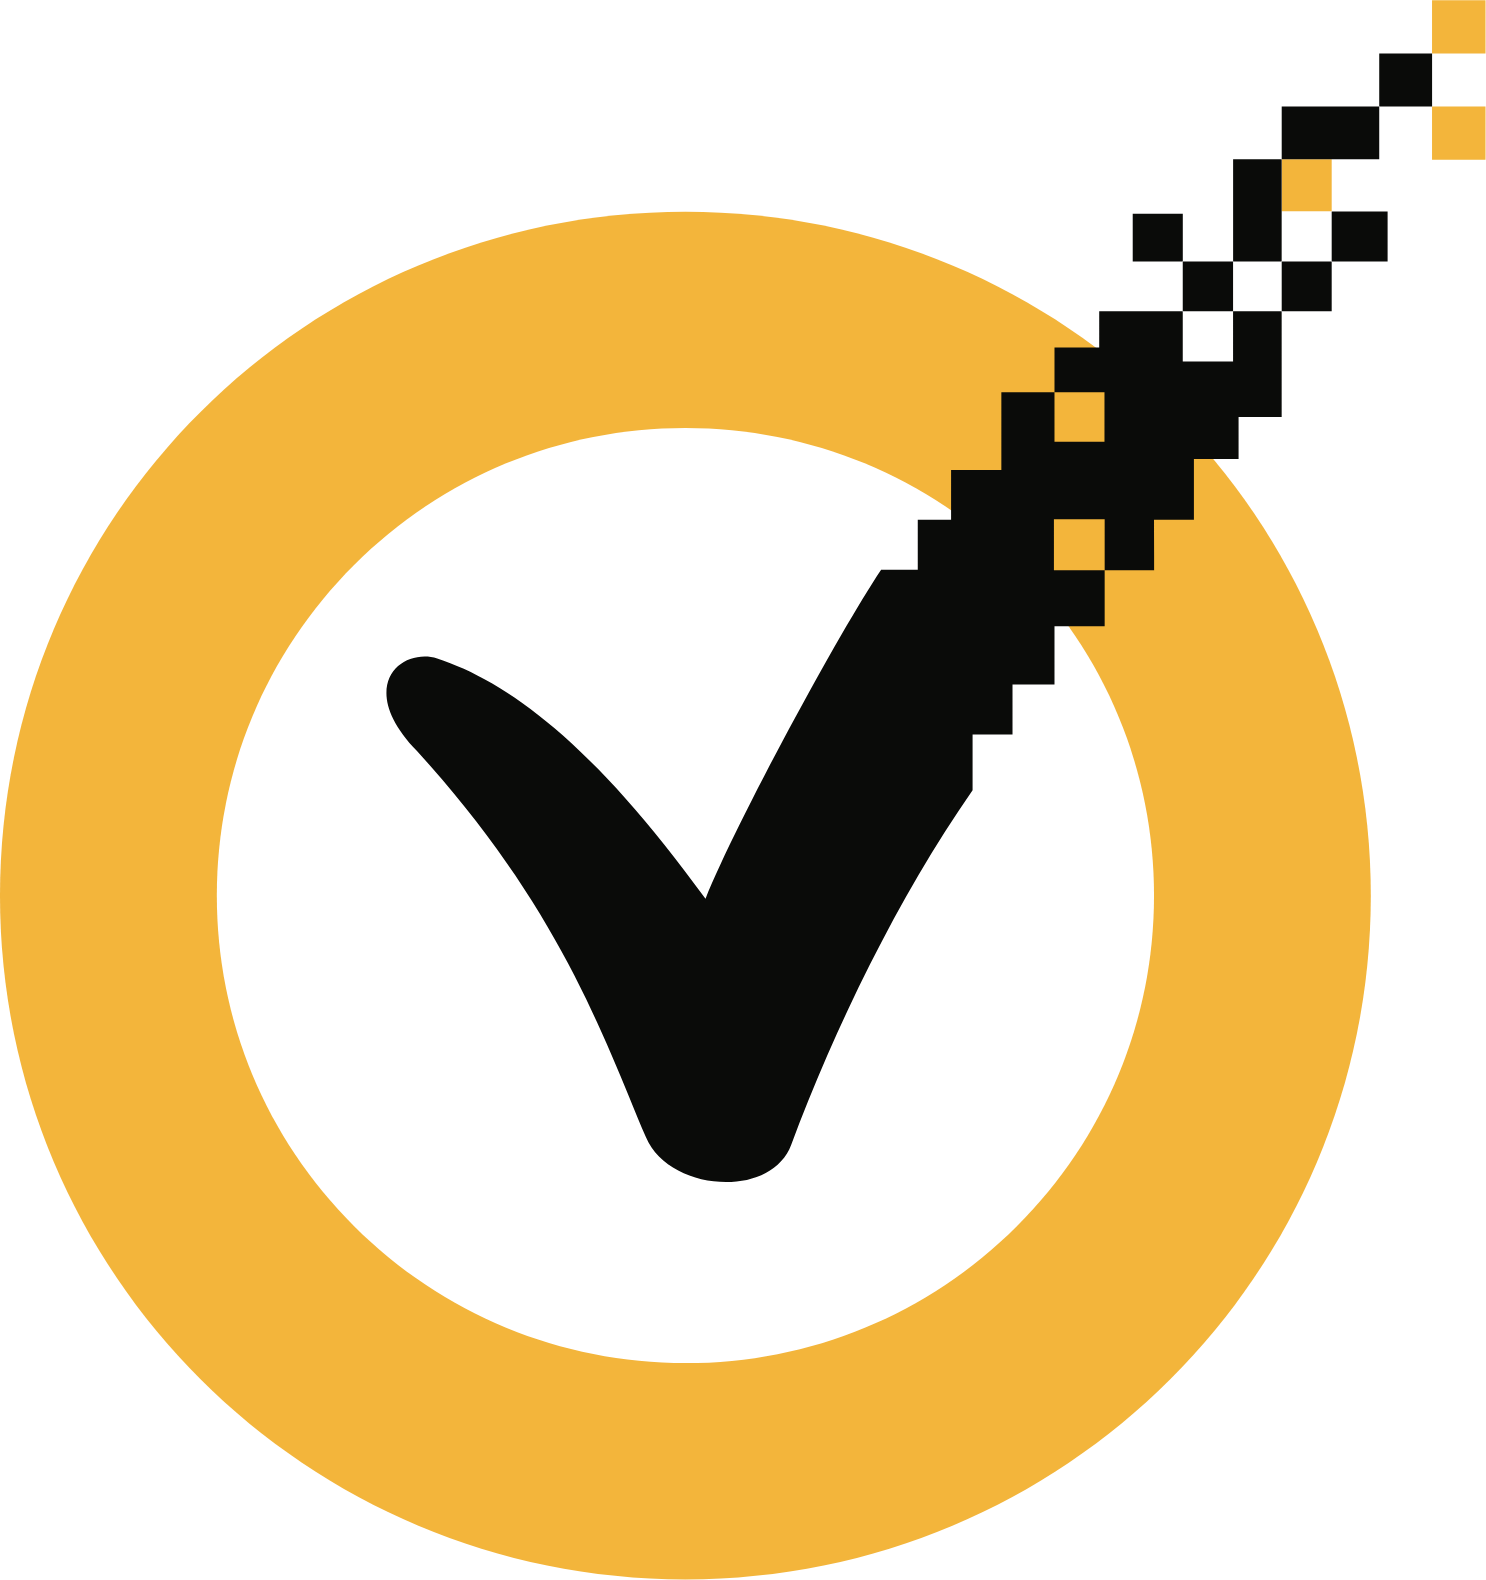 Logo de NortonLifeLock aux formats PNG transparent et SVG vectorisé